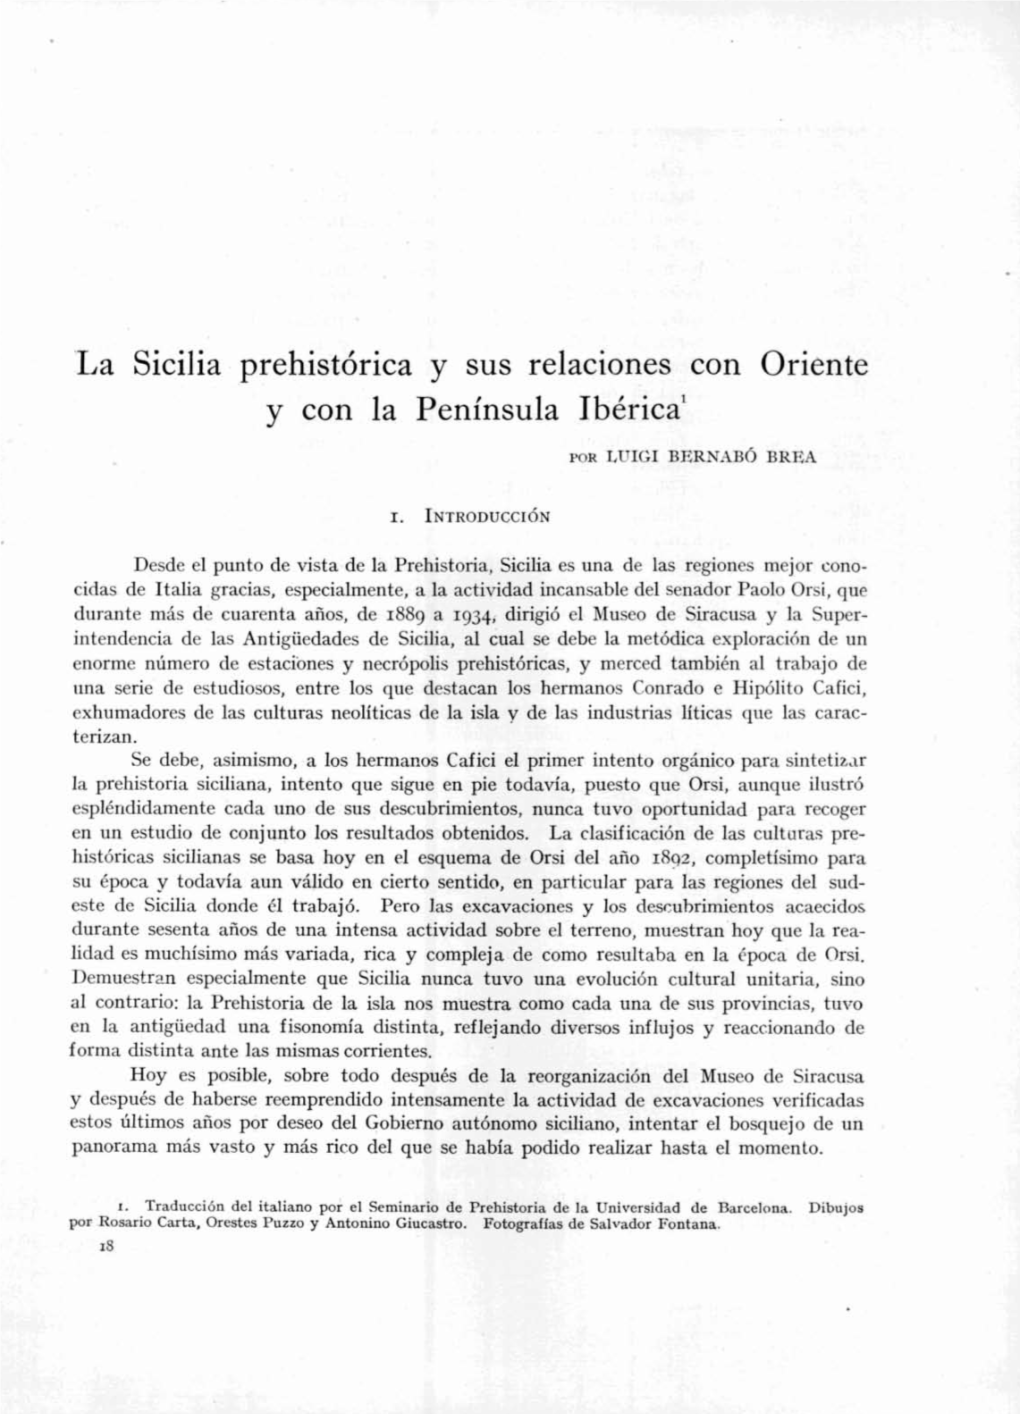 La Sicilia Prehistórica Y Sus Relaciones Con Oriente Y Con La Península Ibérica'